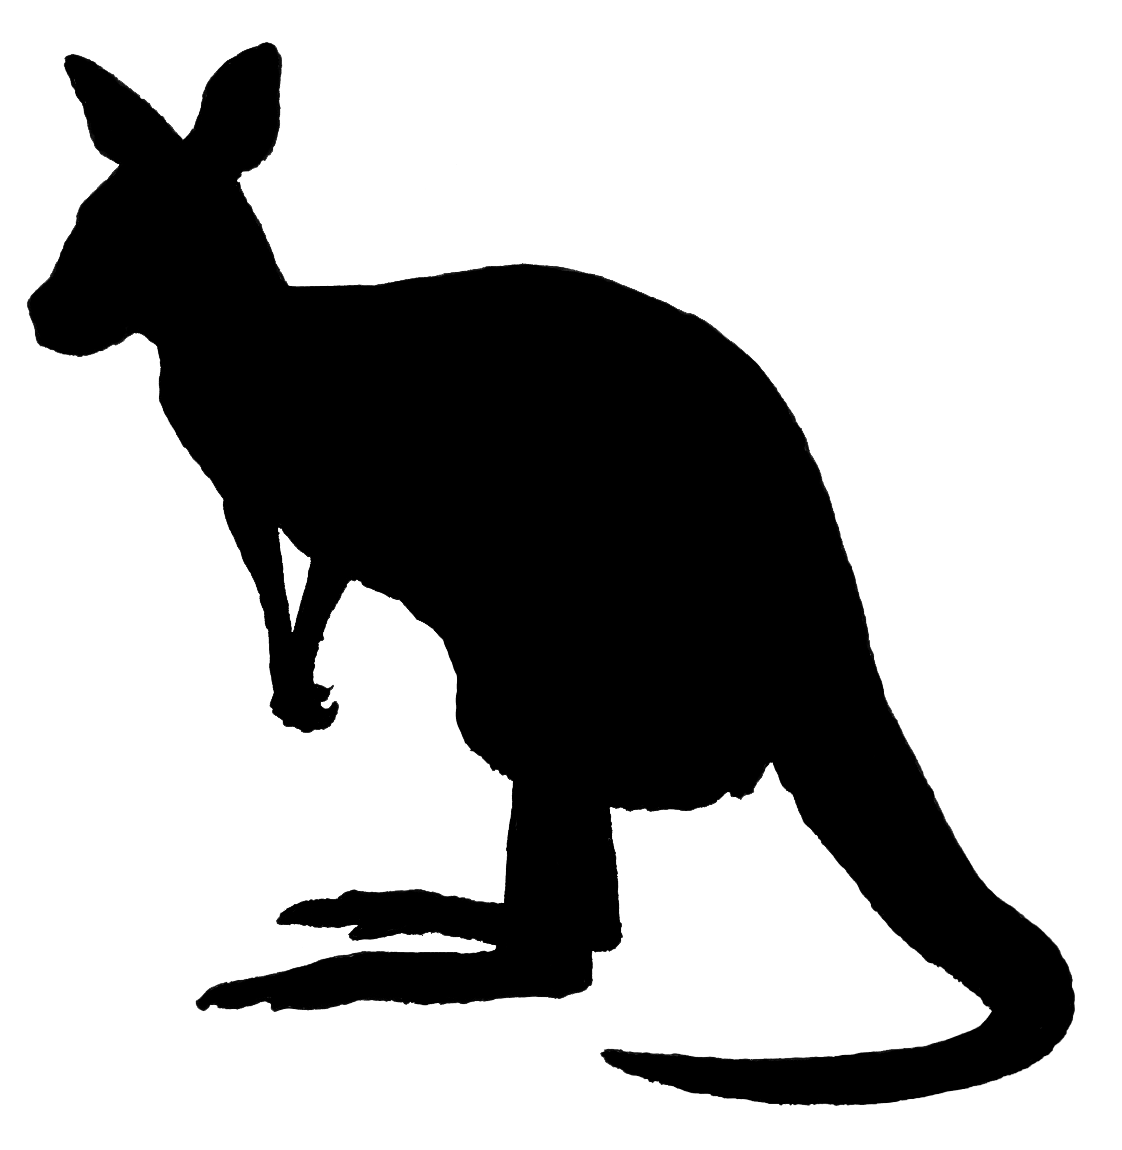 Kangaroo силуэт PNG Image